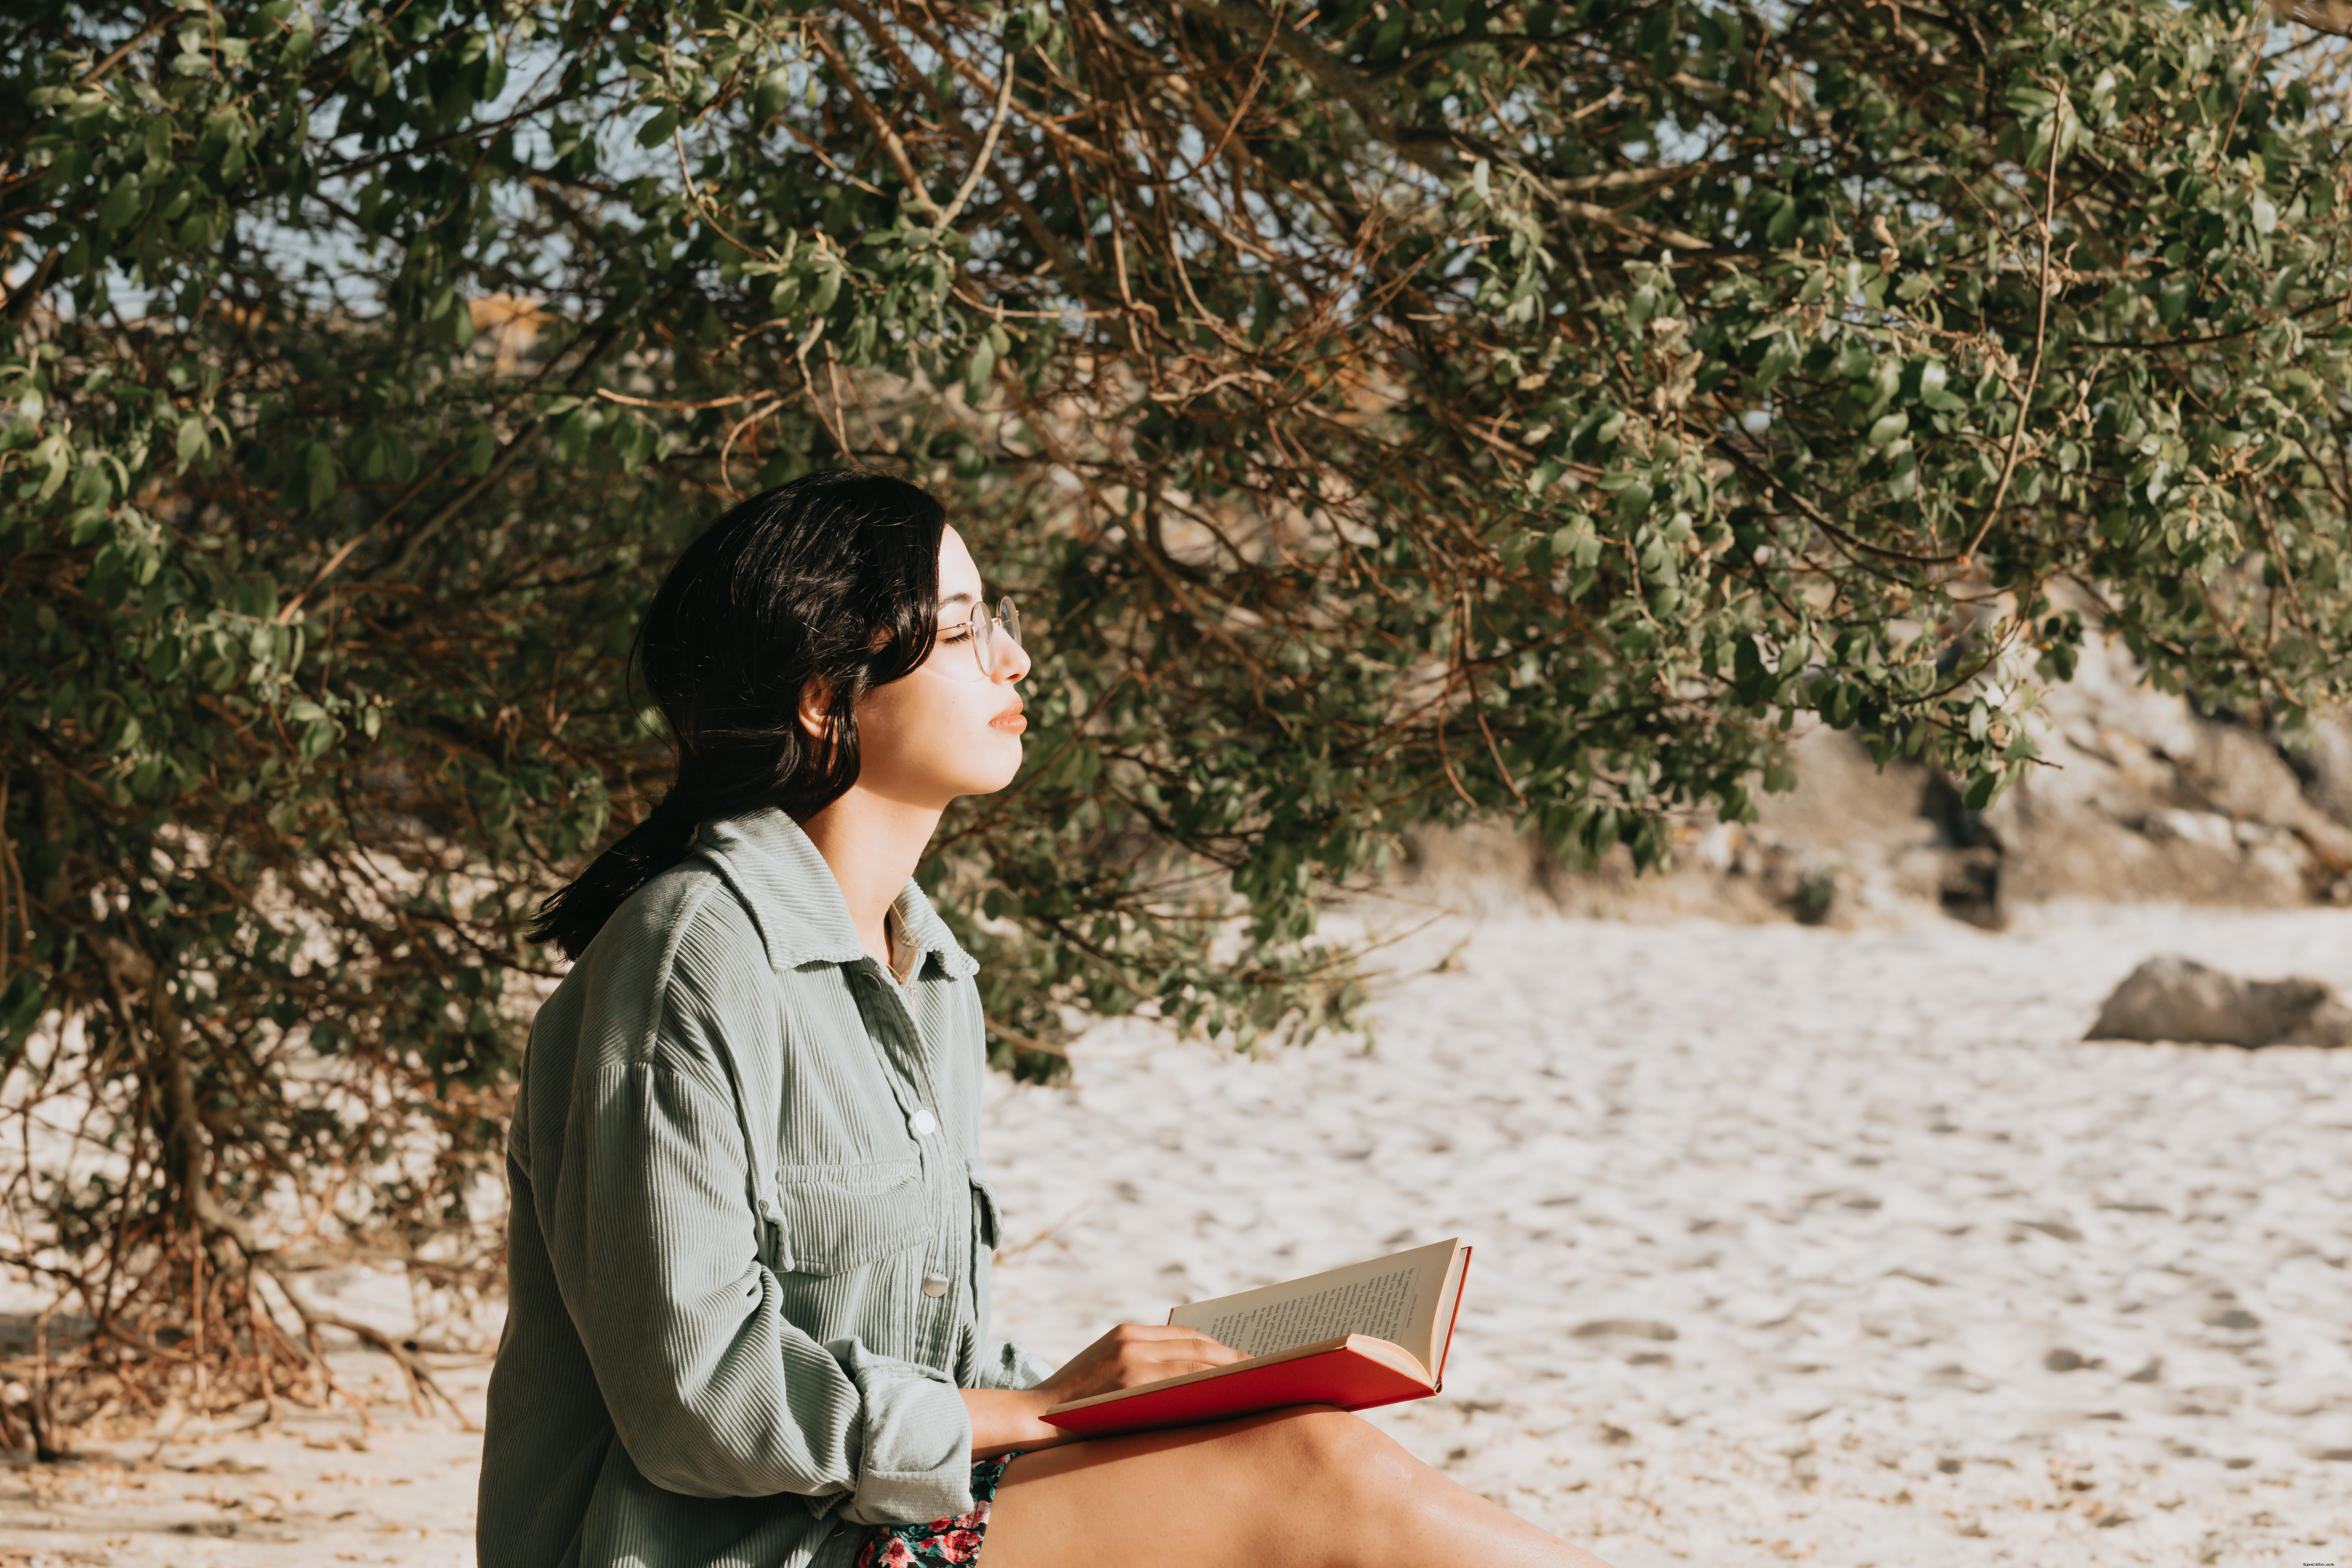 Persona lee una novela en la playa de arena junto a una foto de árbol 